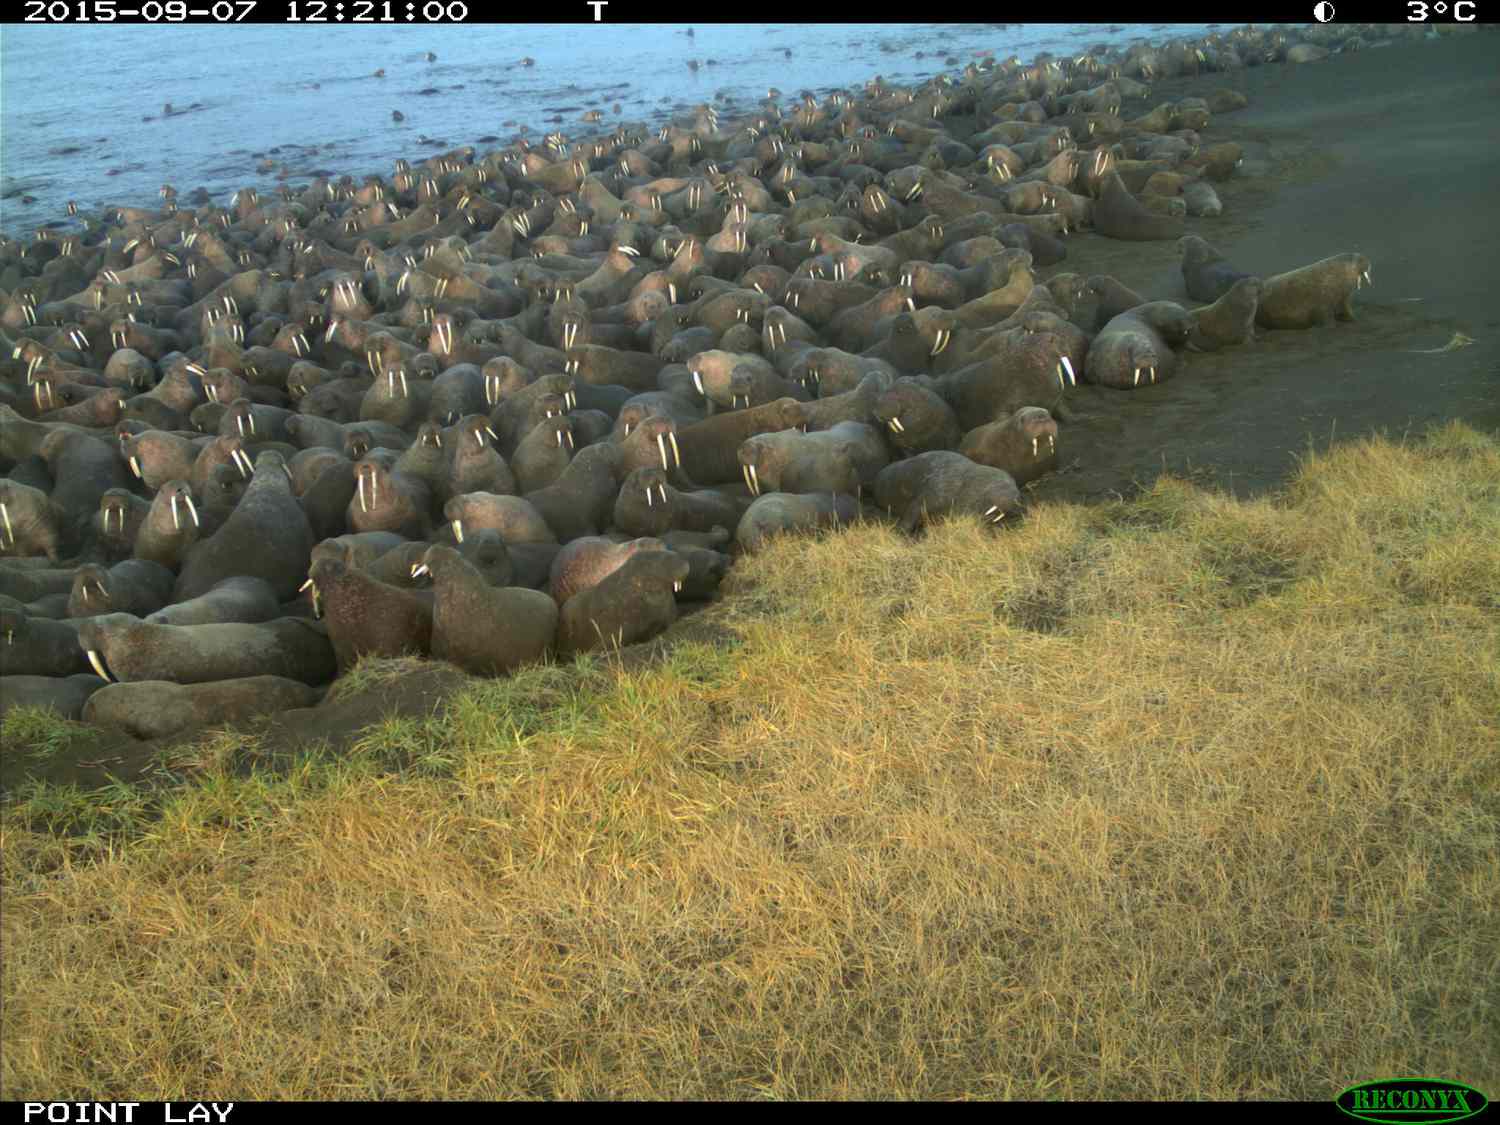 海滩上一个阿拉斯加海象聚集在一个栖息地。